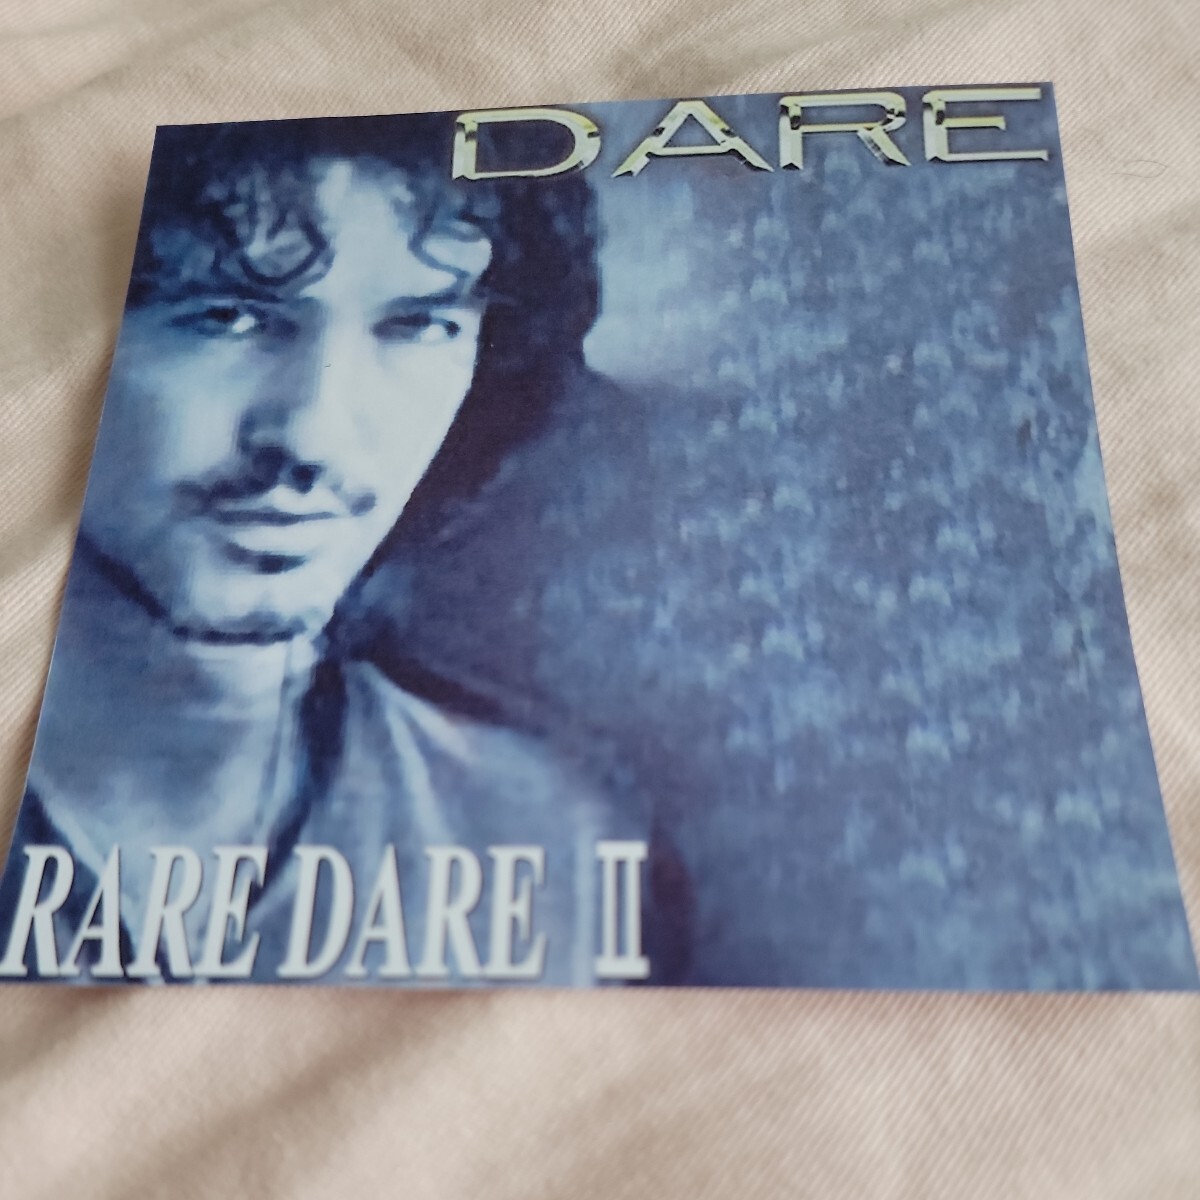 DARE 「RARE DARE II」 メロディアス・ハード系名盤 レア音源集_画像1